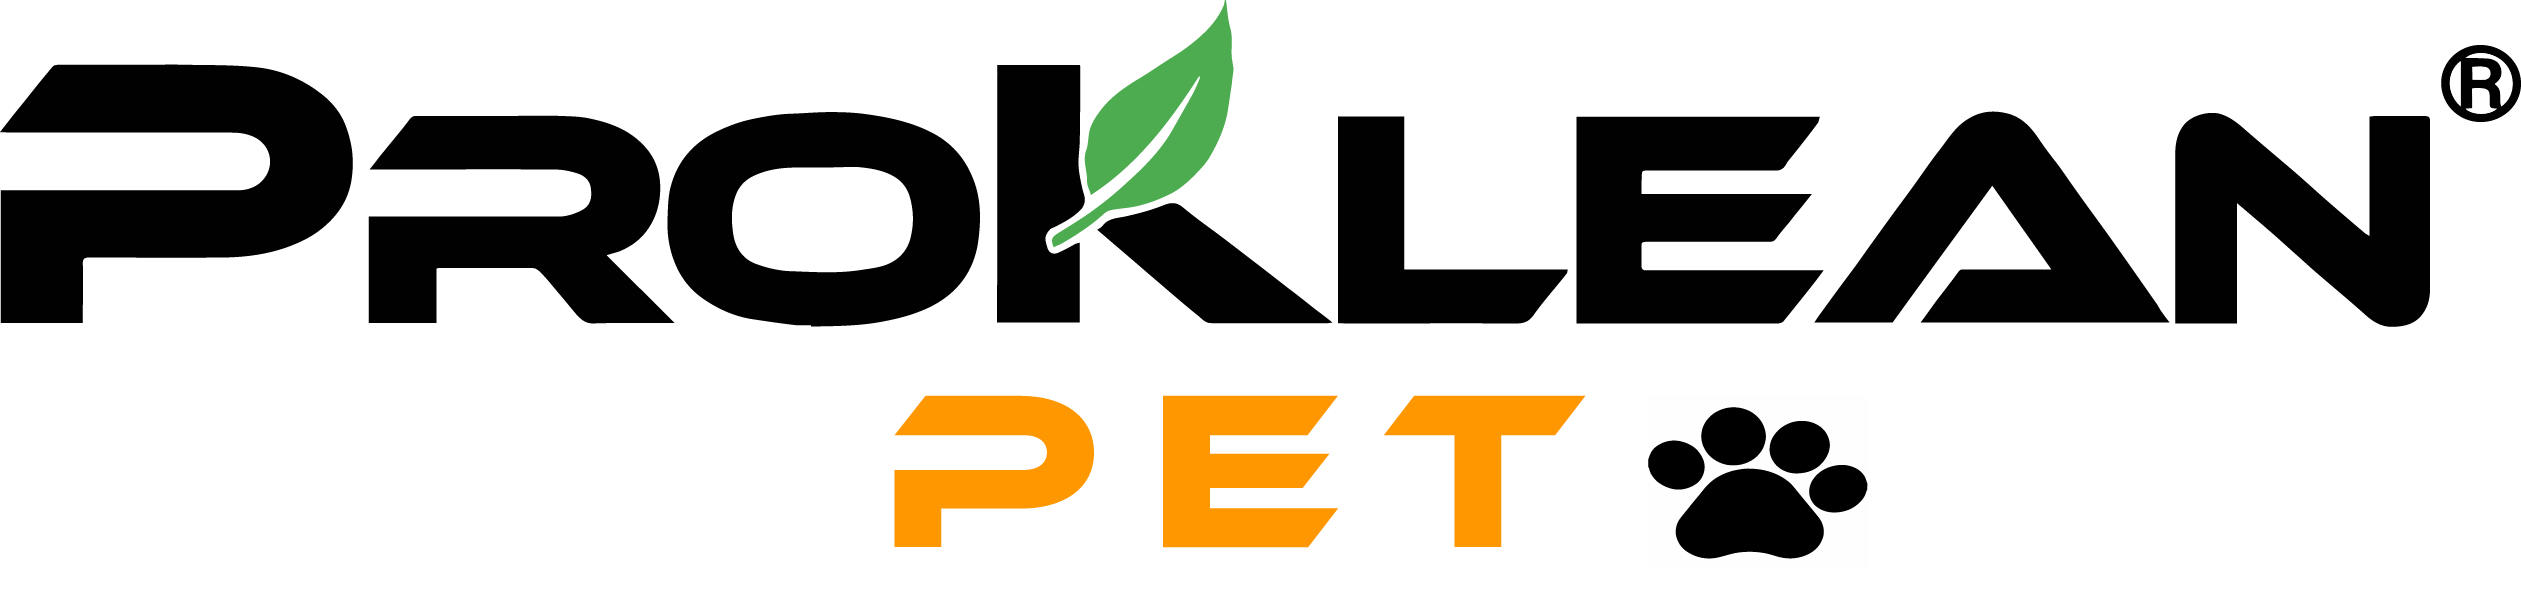 The logo for Proklean Pet by Proklean Industries.